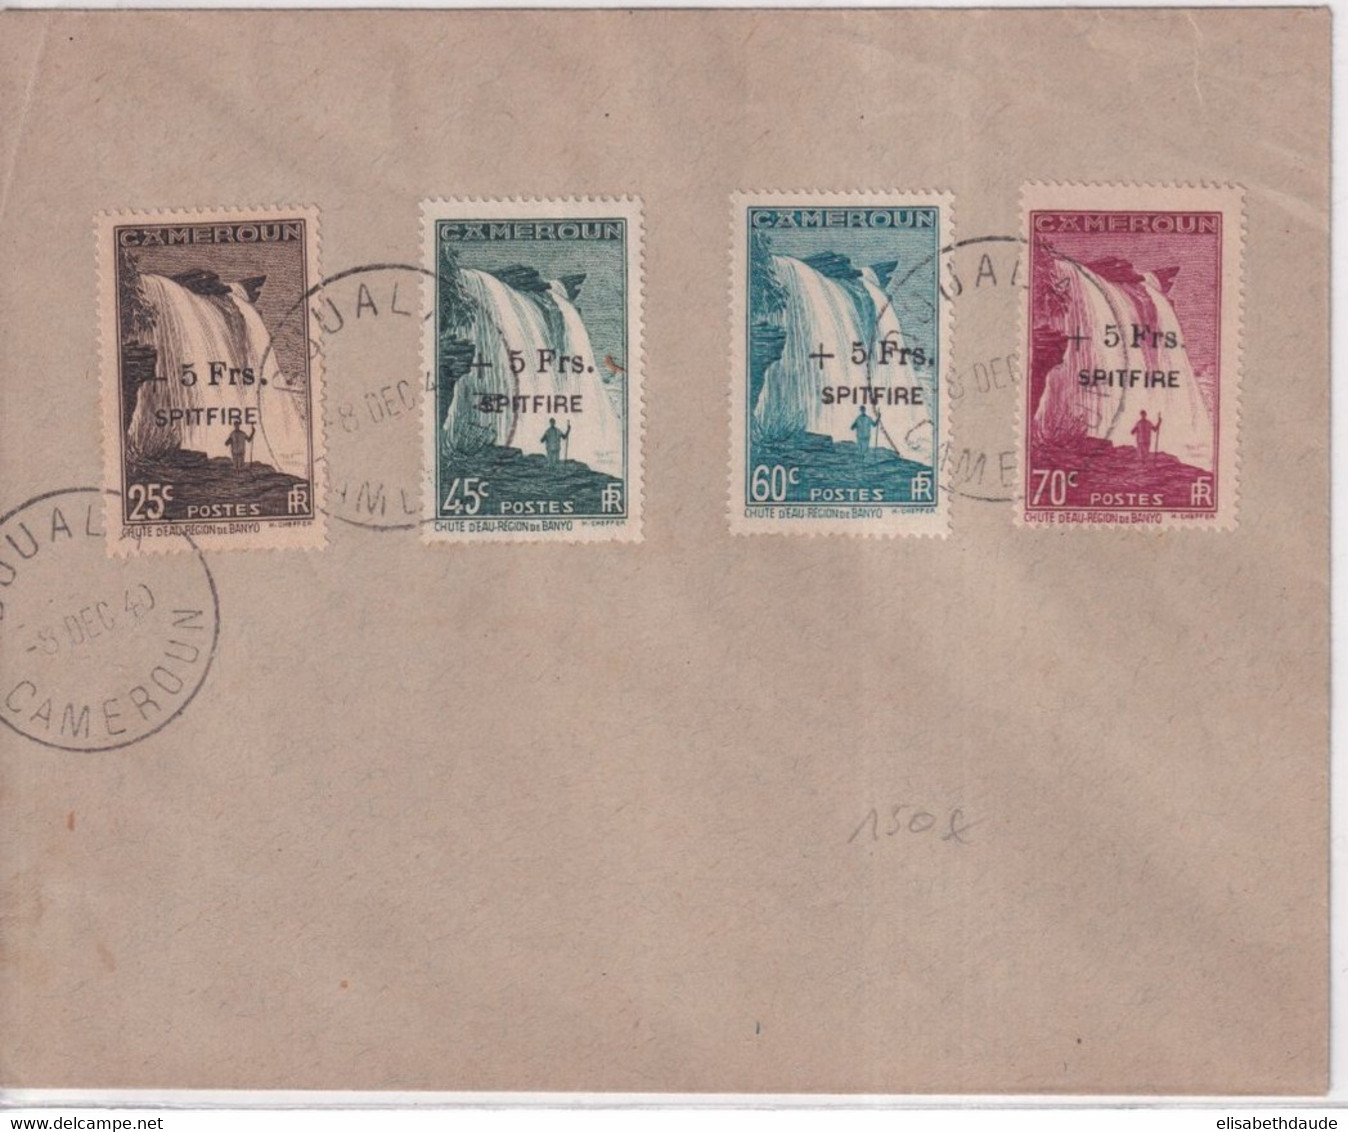 CAMEROUN - 1940 - SERIE FRANCE LIBRE "SPITFIRE" YVERT 236/239 OBLITEREE Sur ENVELOPPE - COTE = 580 EUR. - Covers & Documents